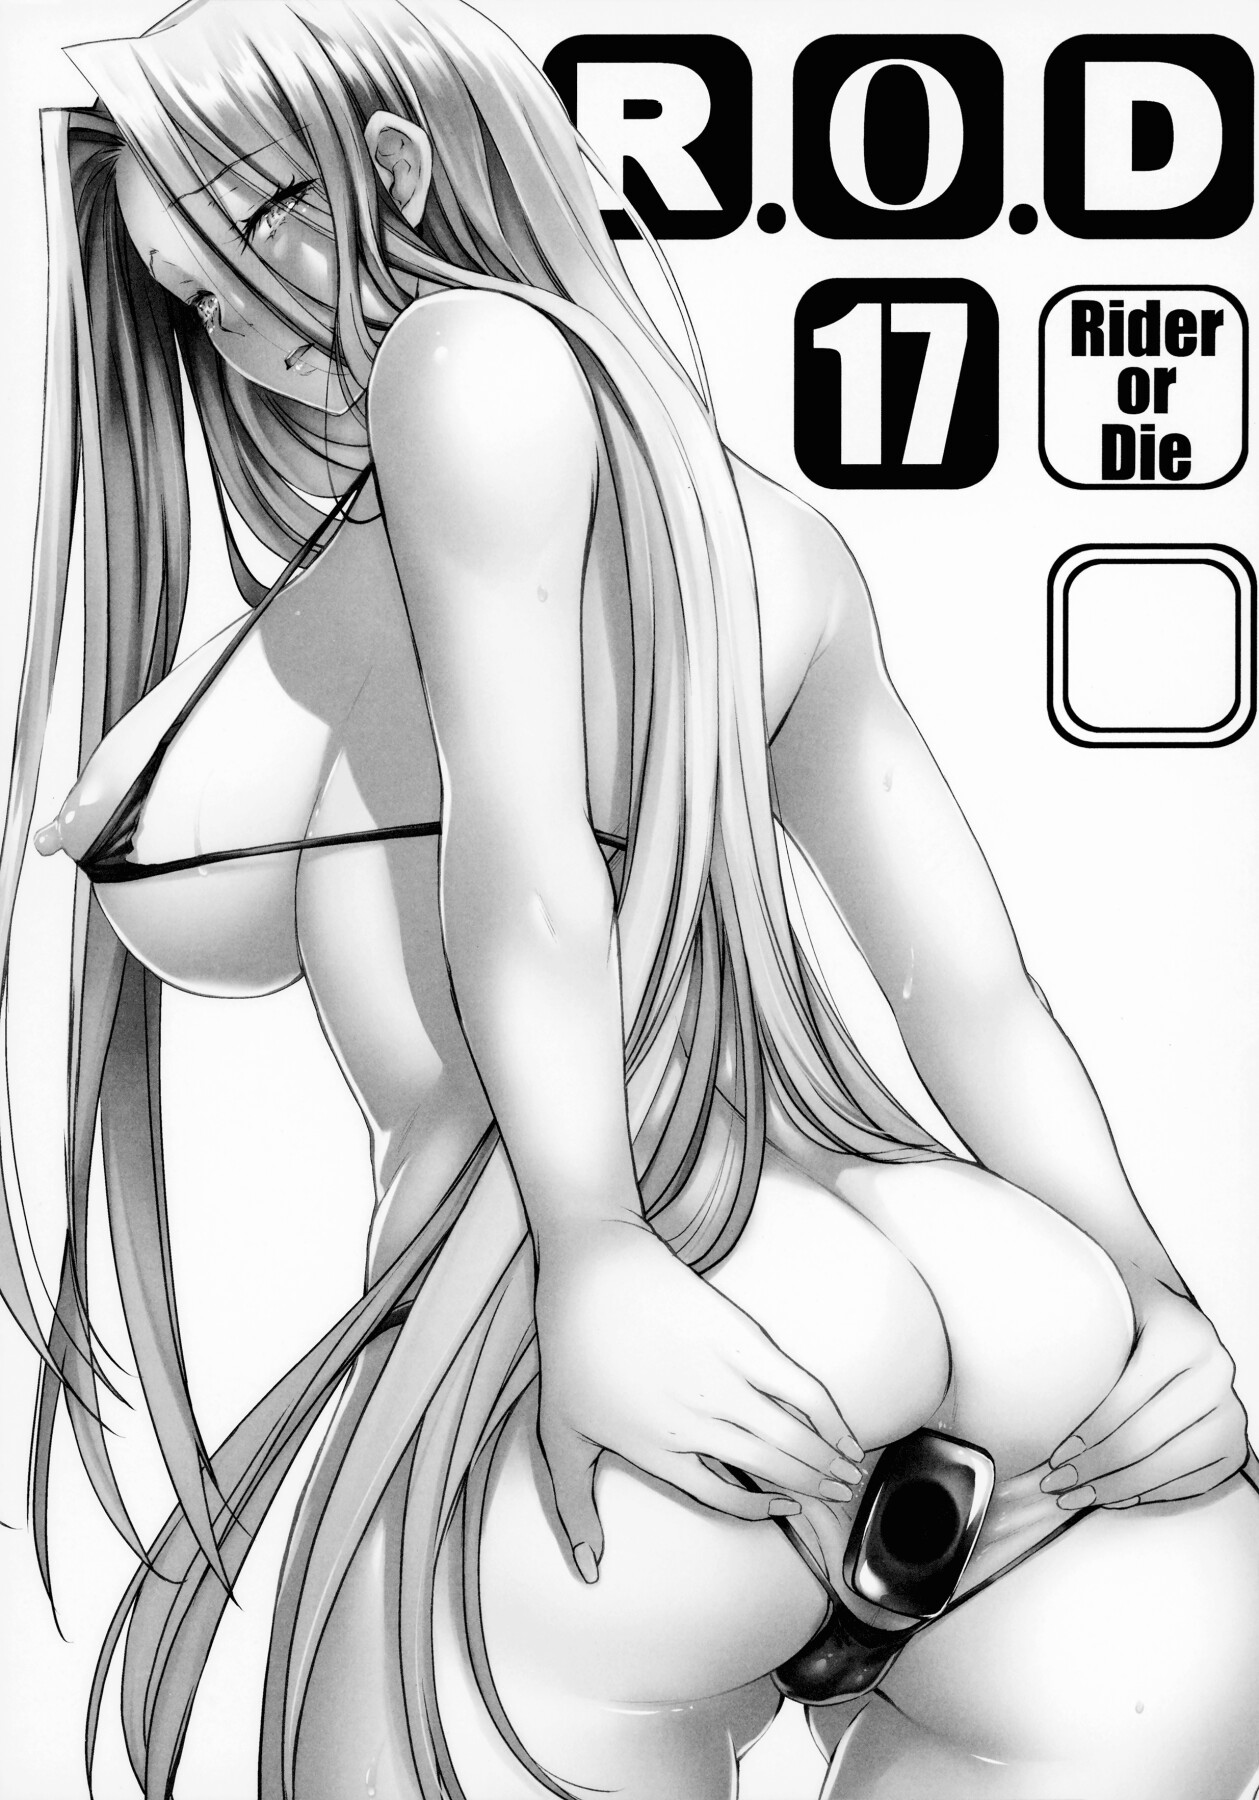 Hentai Manga Comic-R.O.D 17 -Rider or Die--Read-2